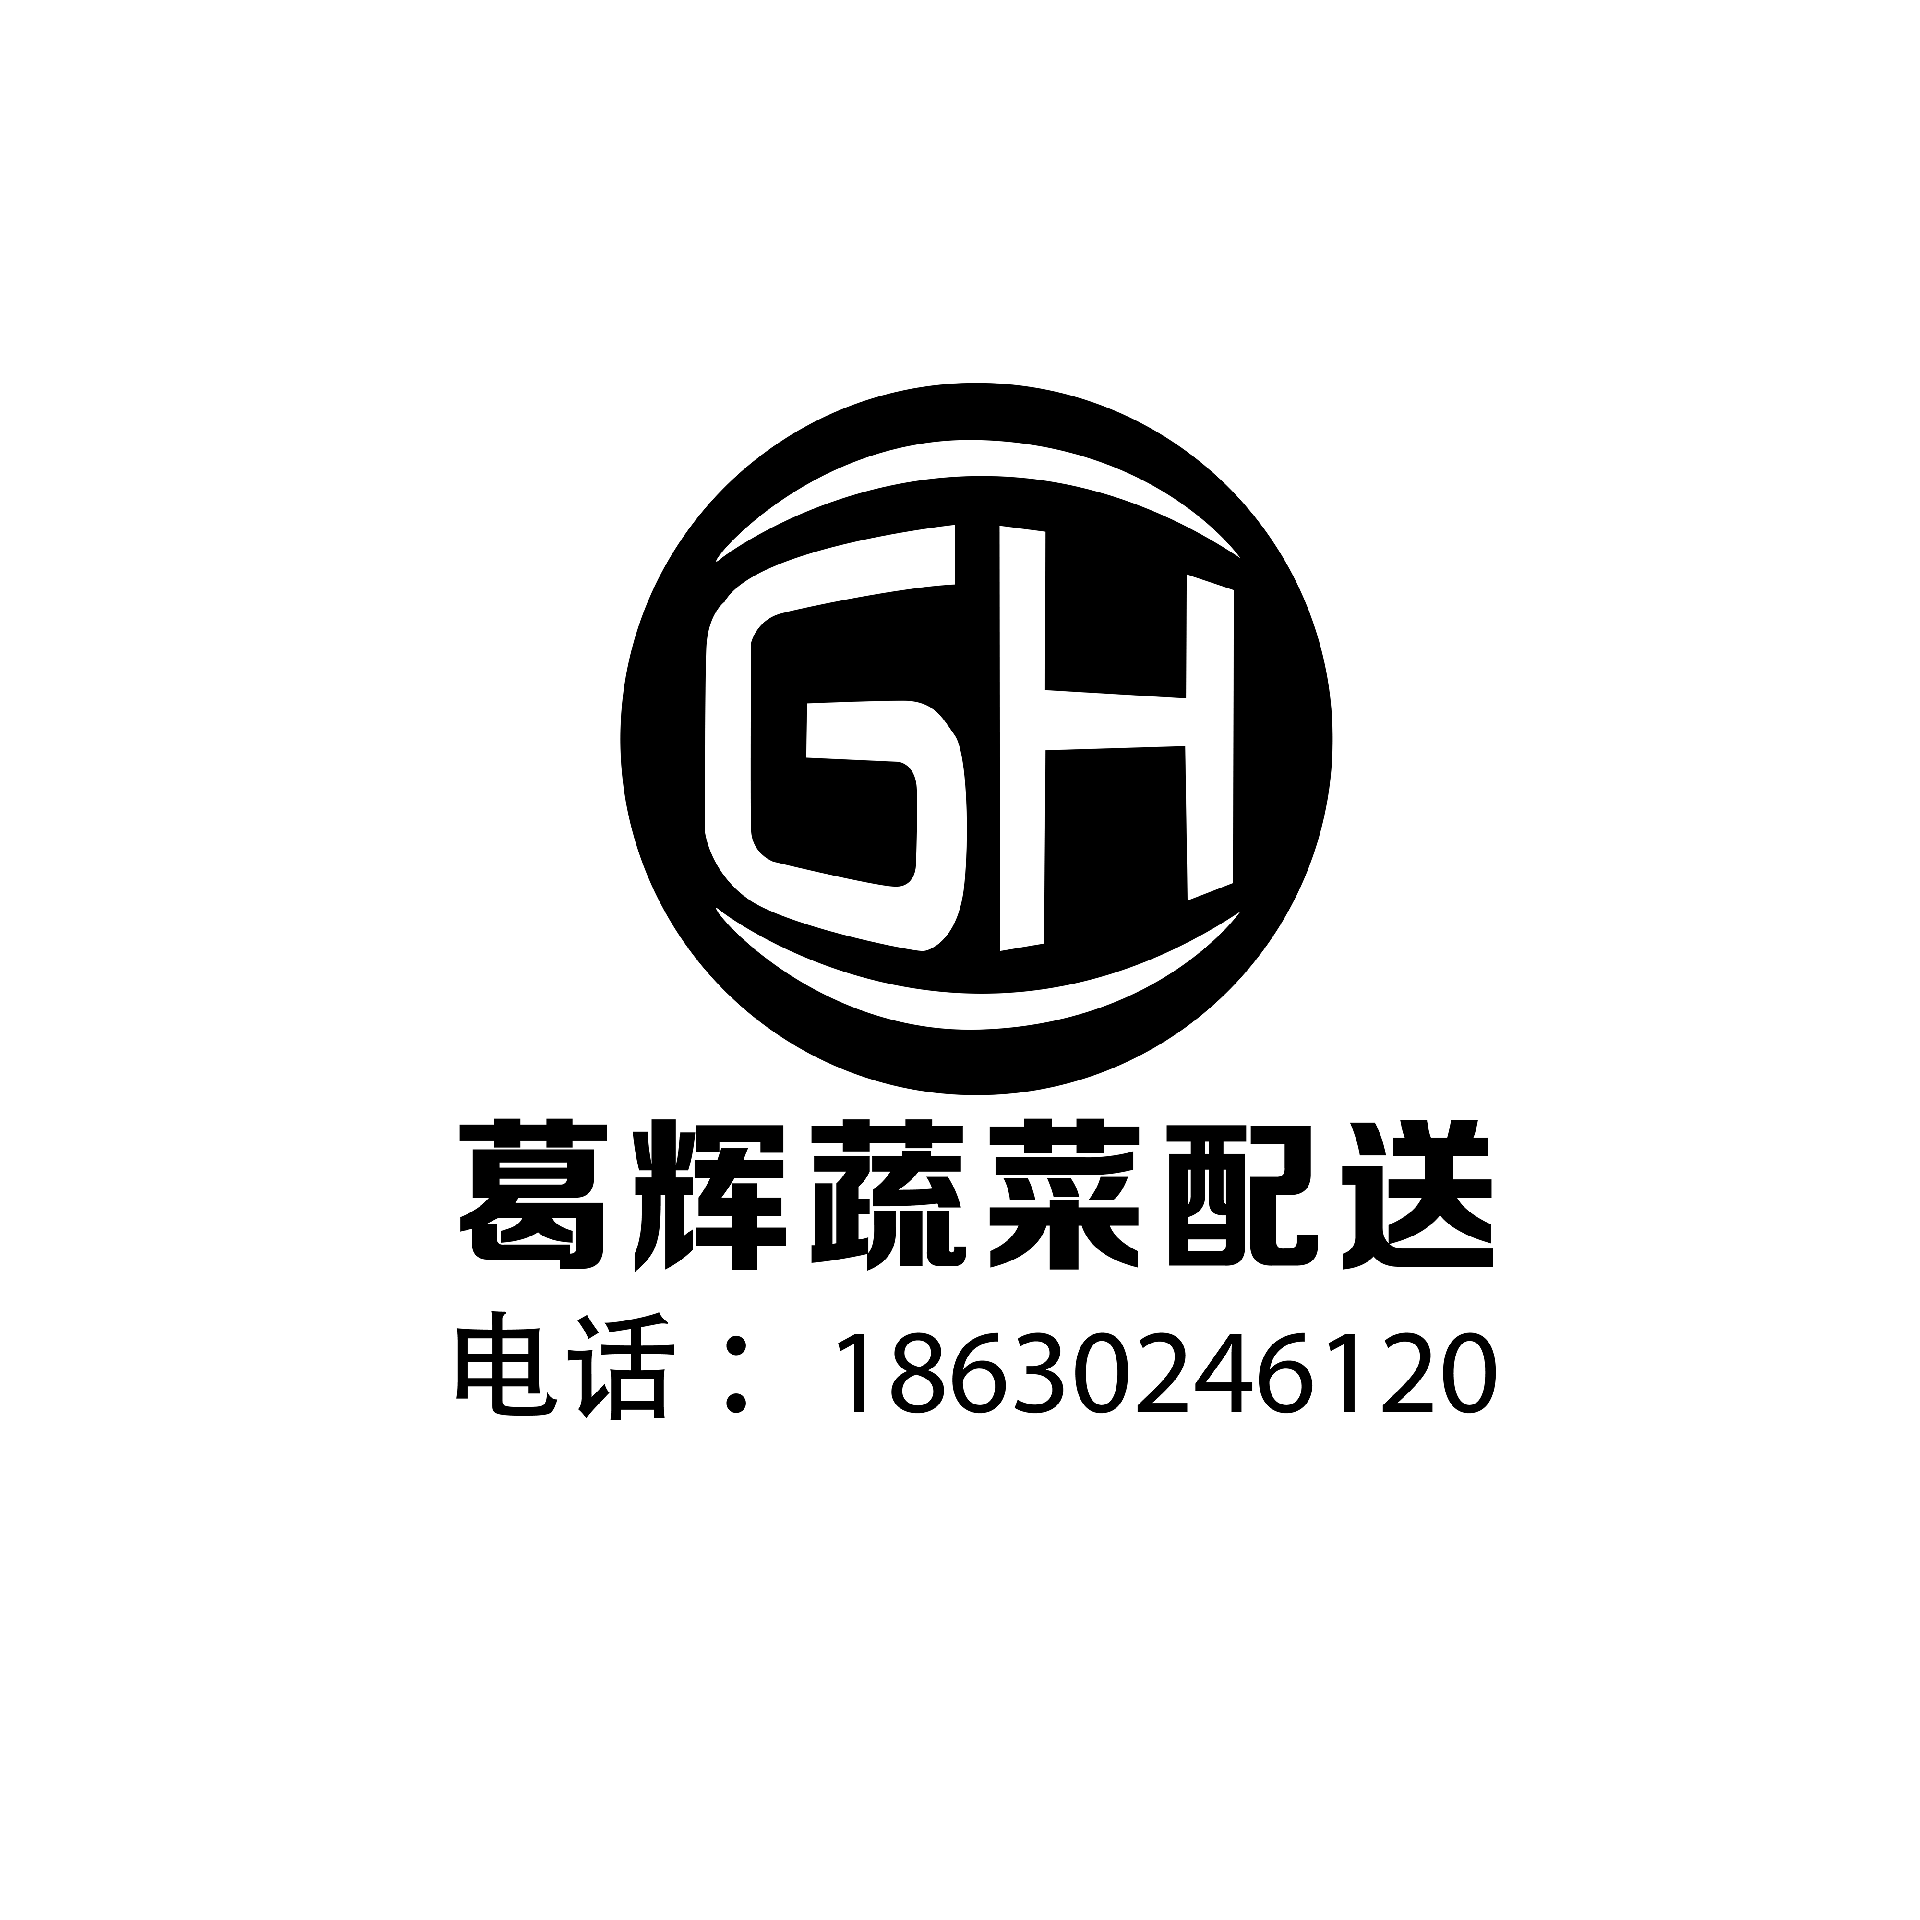 葛辉蔬菜配送logo.png